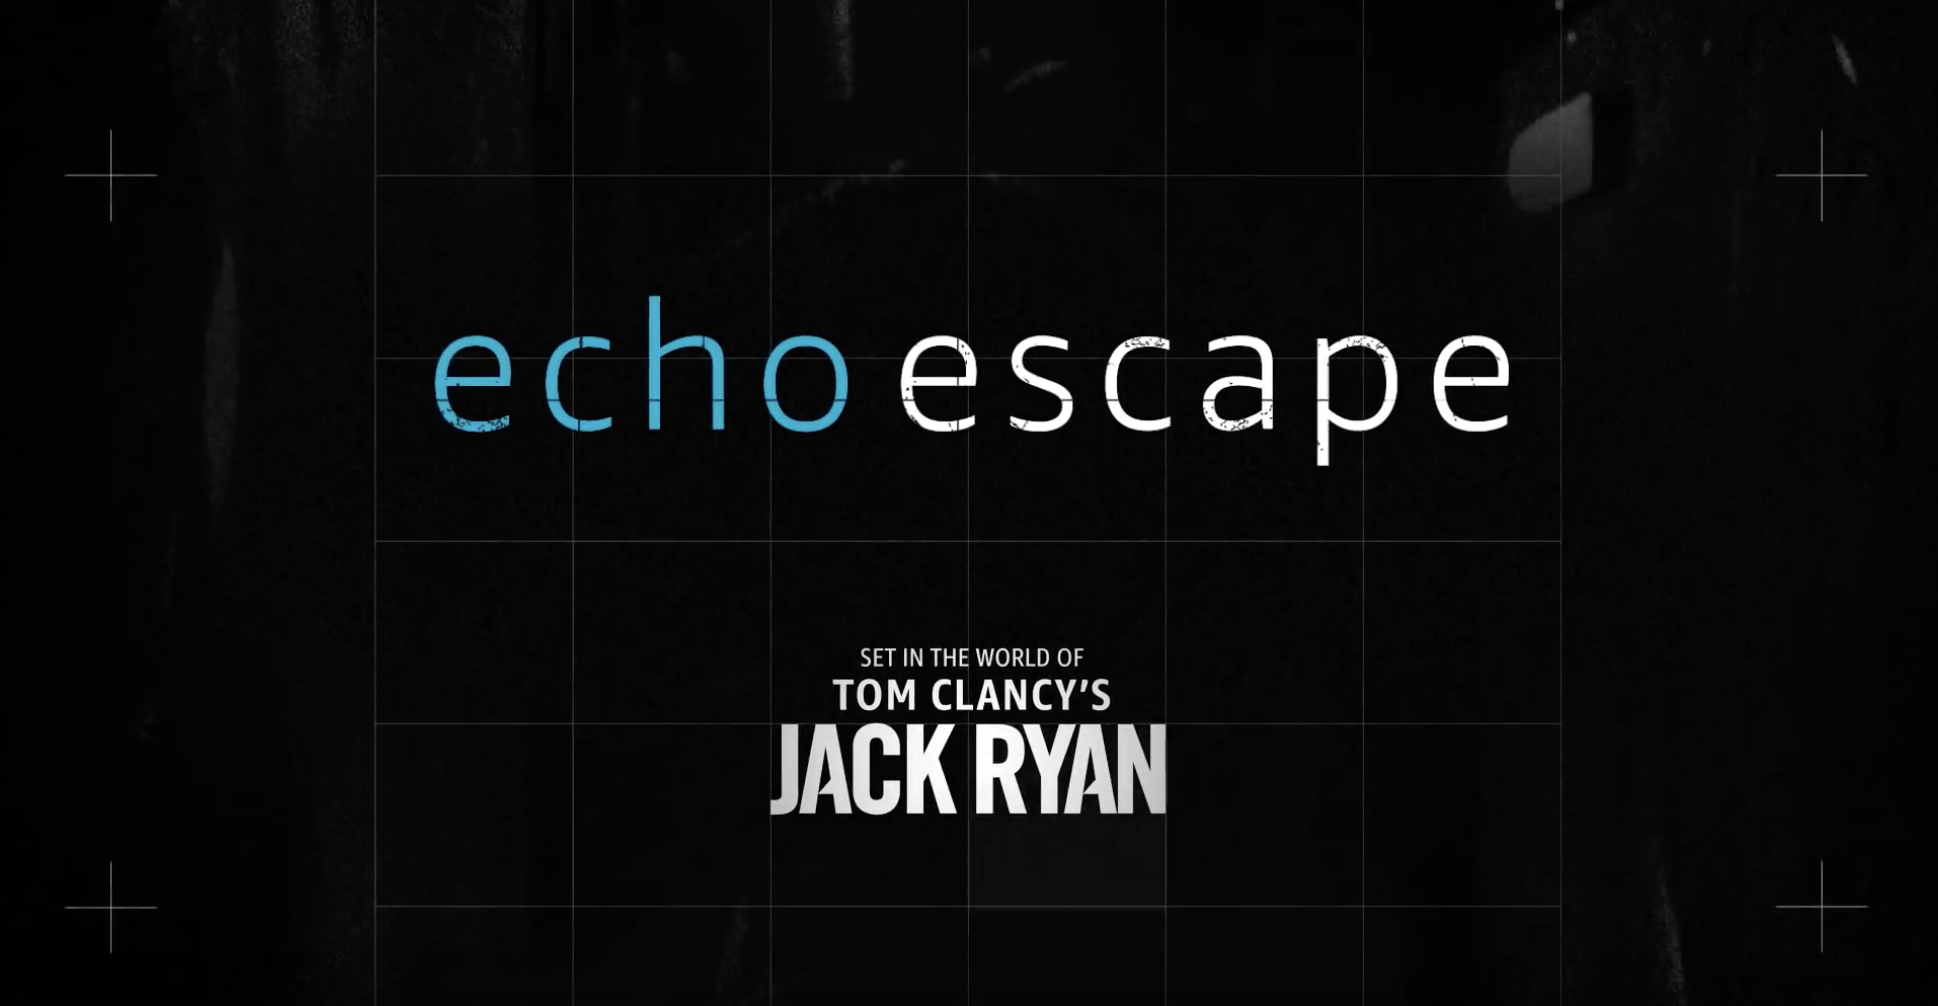 Jack Ryan Echo Escape – Experiential Marketing – Experiential Agency